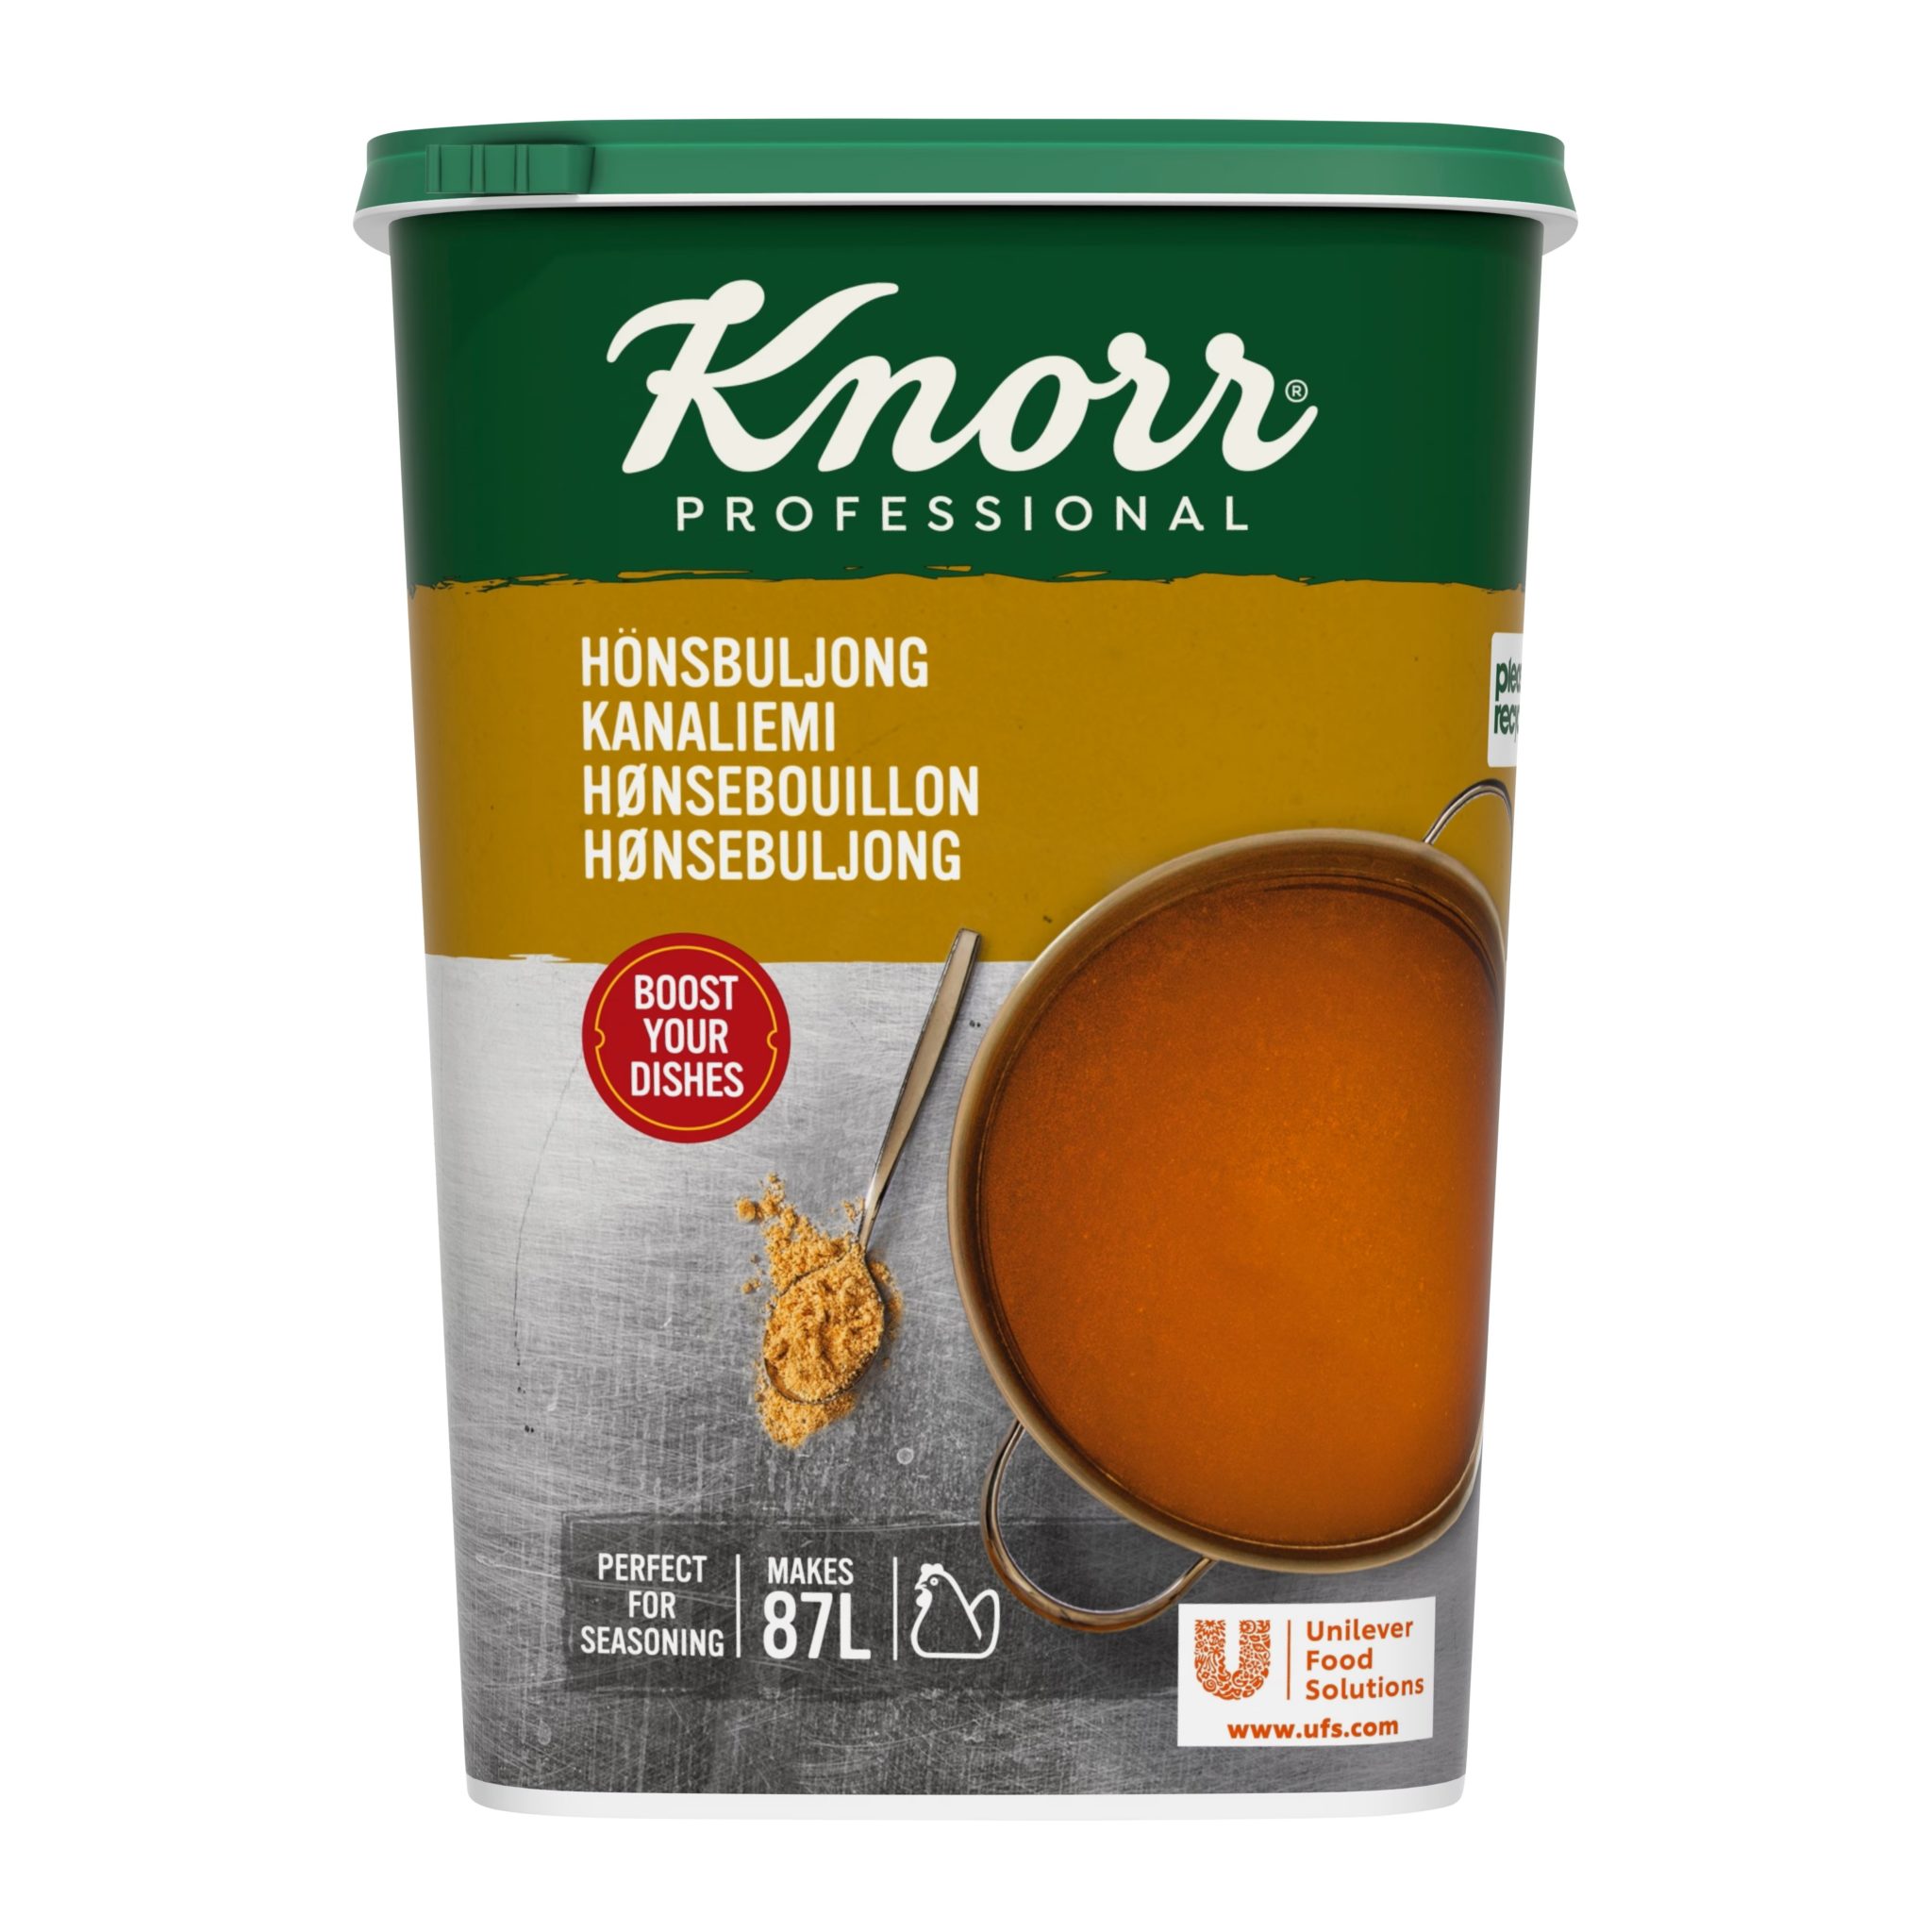 Knorr Kjúklingakraftur þurr 1,3kg (3)